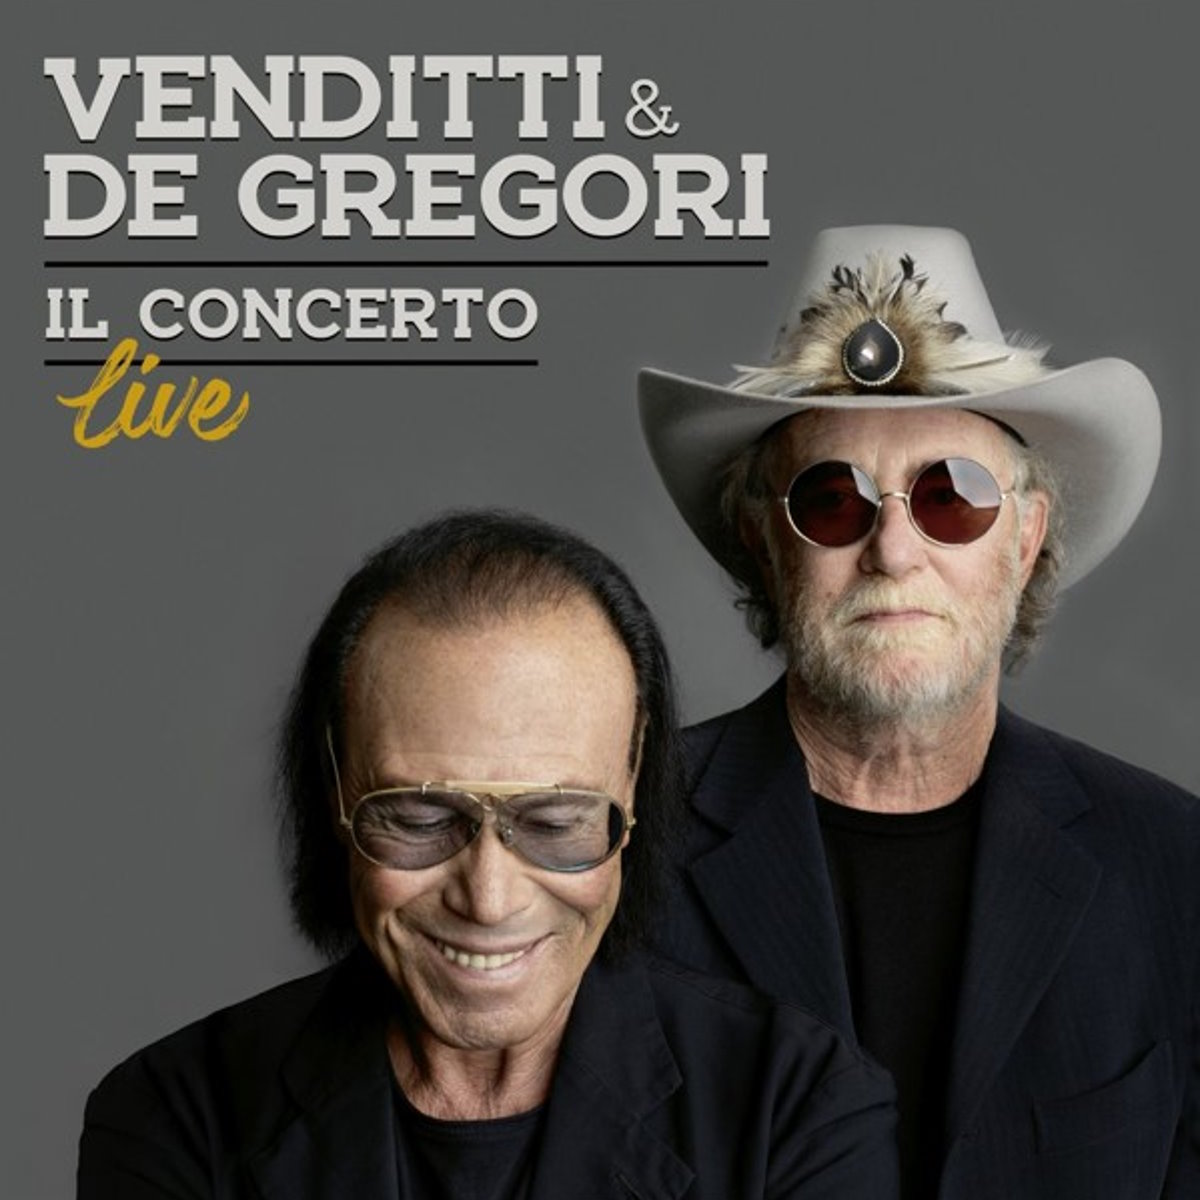 Venditti & De Gregori: venerdì 15 dicembre, esce, in digitale, vinile e cd “Il Concerto”, l'album live con 17 brani registrati in presa diretta